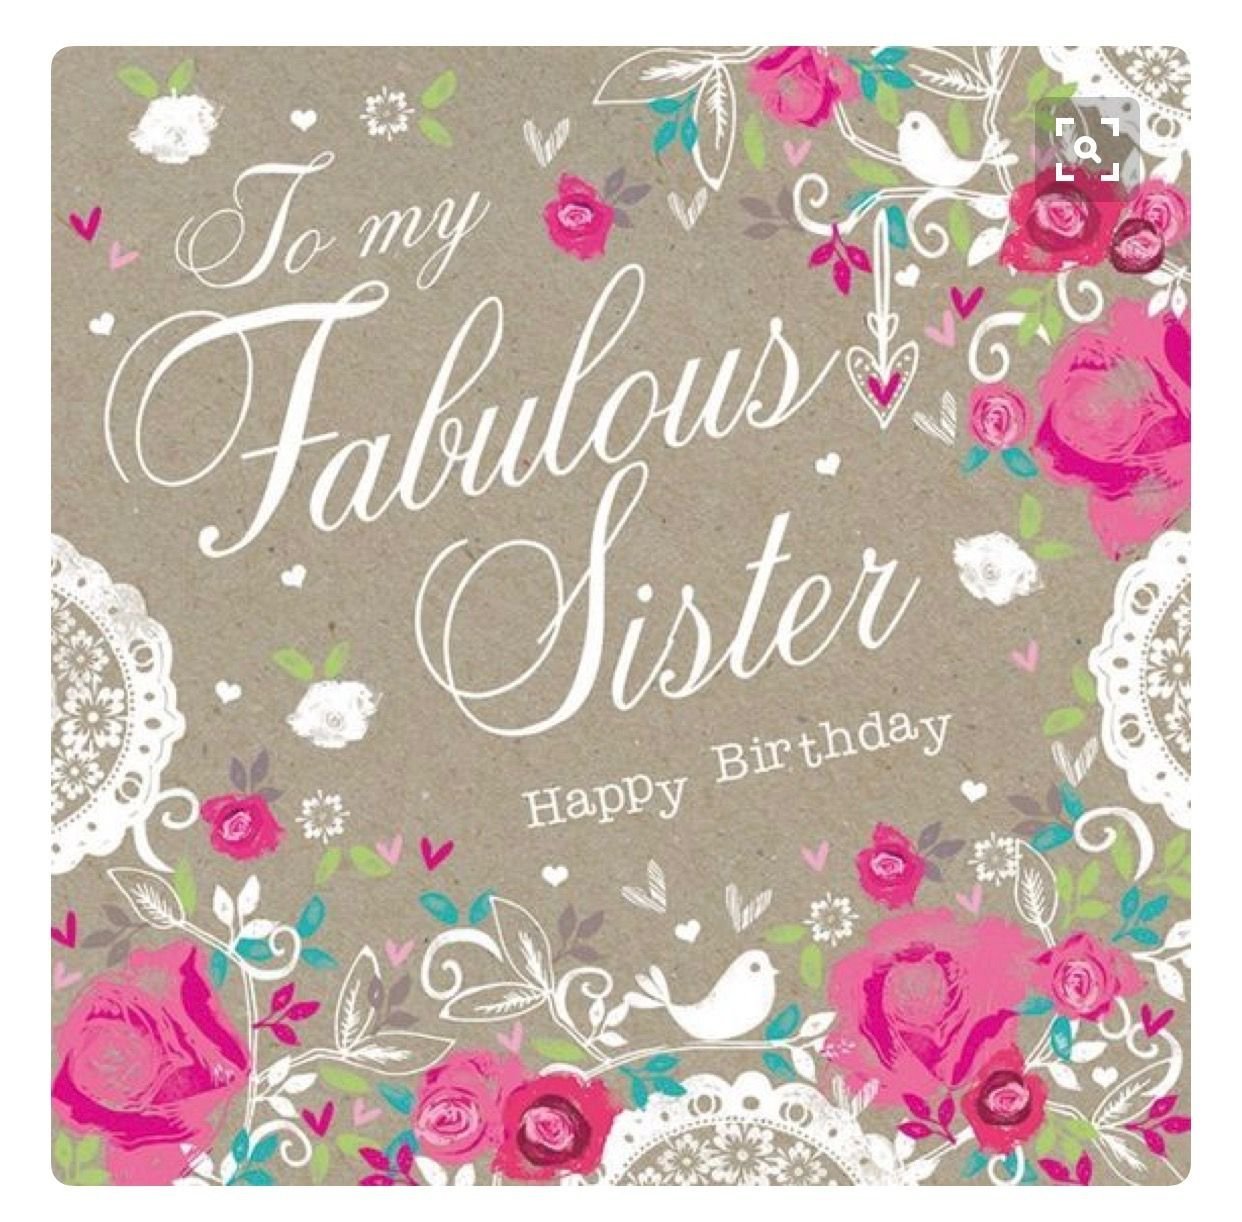 Sister s birthday. Стильные открытки с днем рождения. Happy Birthday стильные картинки. Happy Birthday сестра. Открытка Happy Birthday sister.